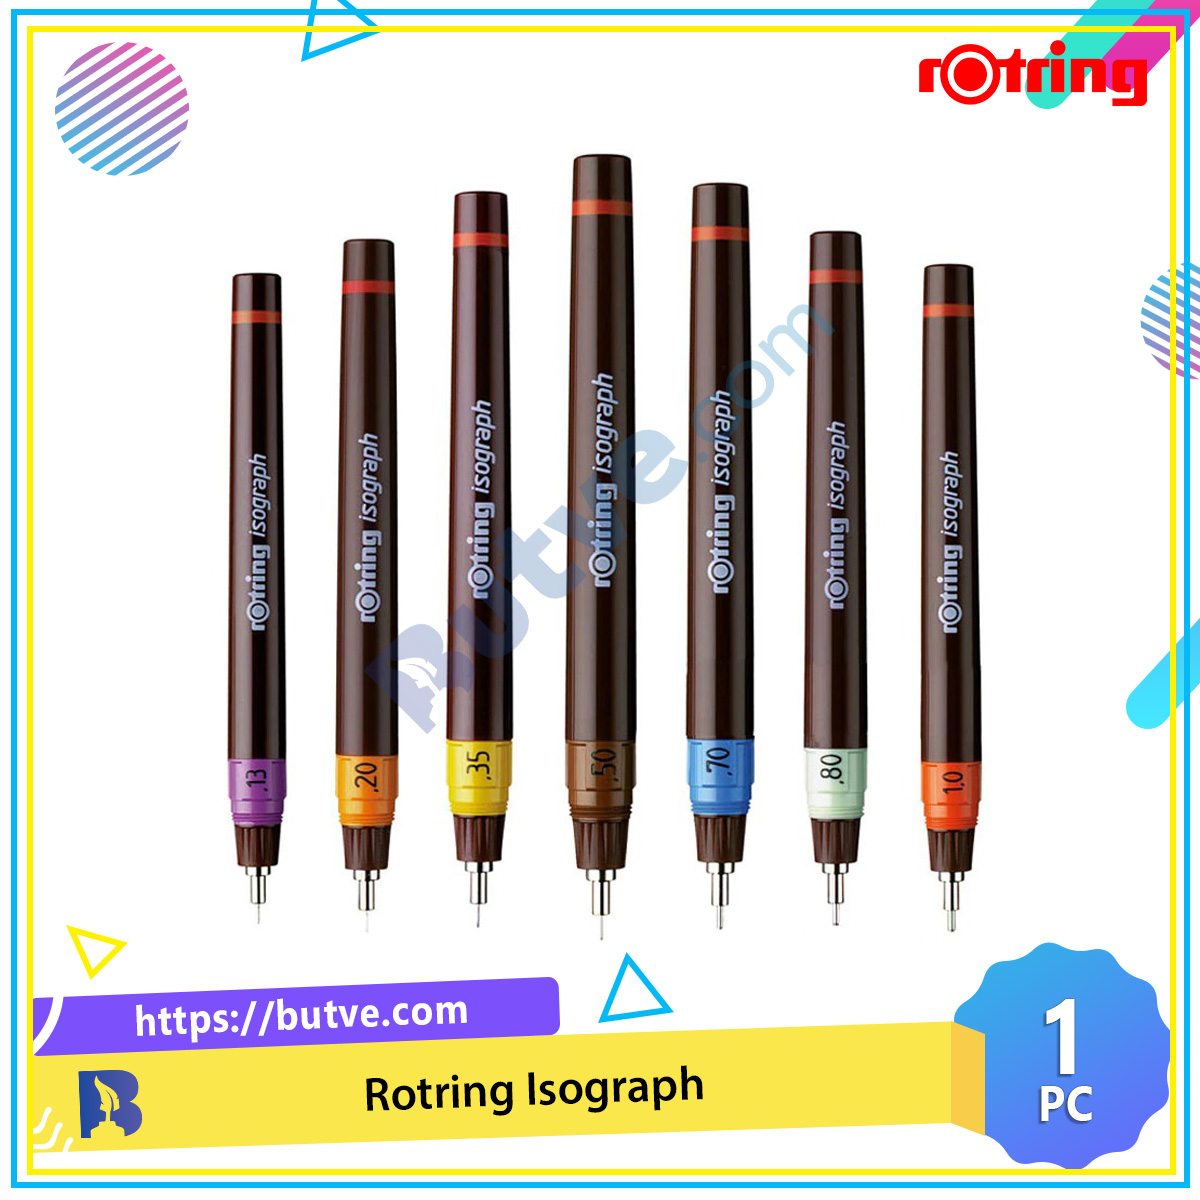 Bút Kim Cao Cấp Dùng Để Vẽ Kỹ Thuật Rotring Isograph Technical Pen (Cây Lẻ)  | Butve.Com